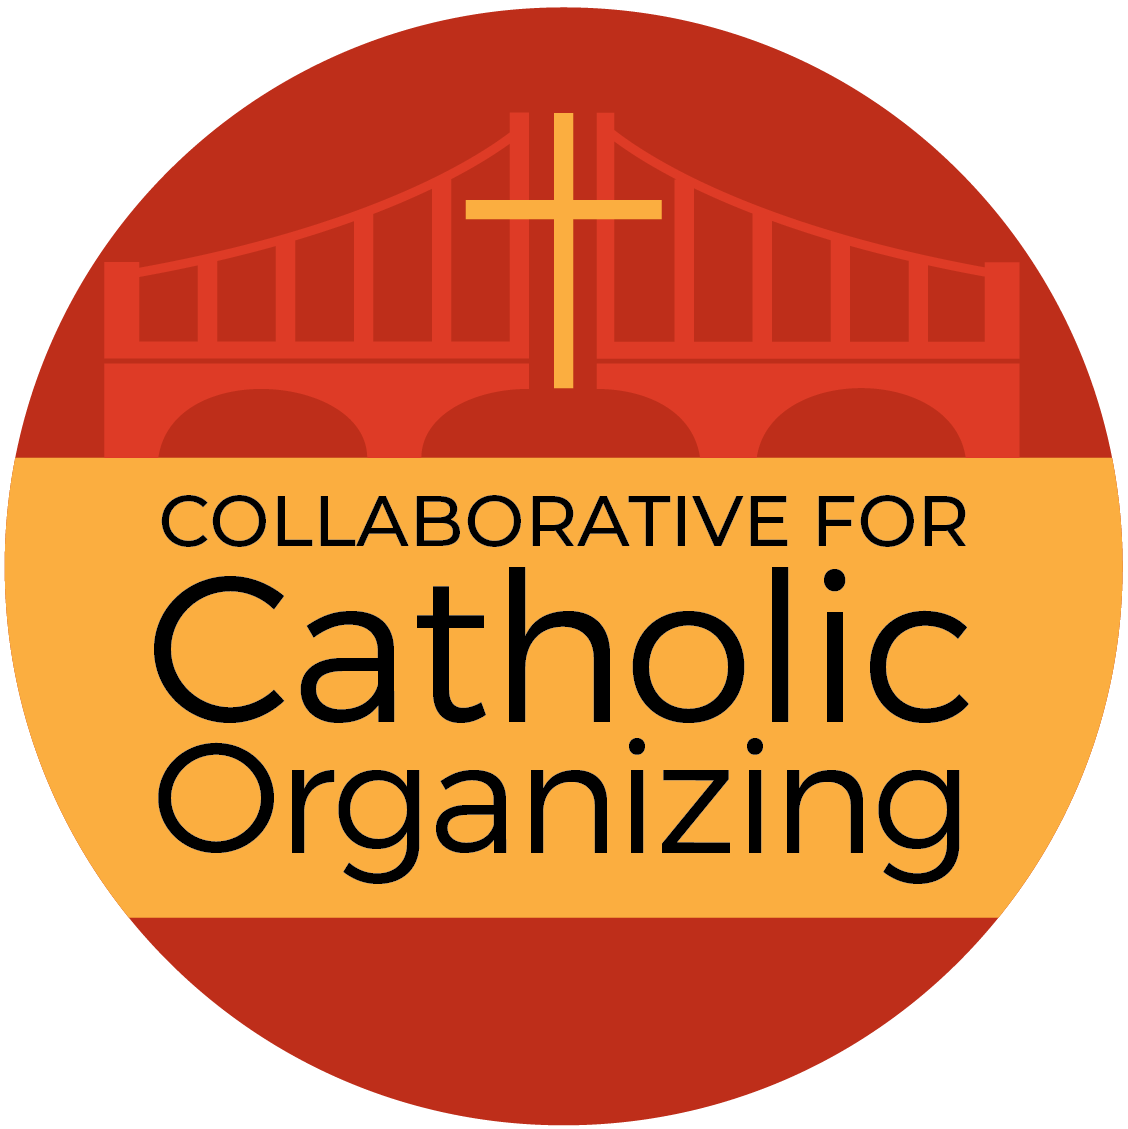  Collaborative for Catholic Organizing